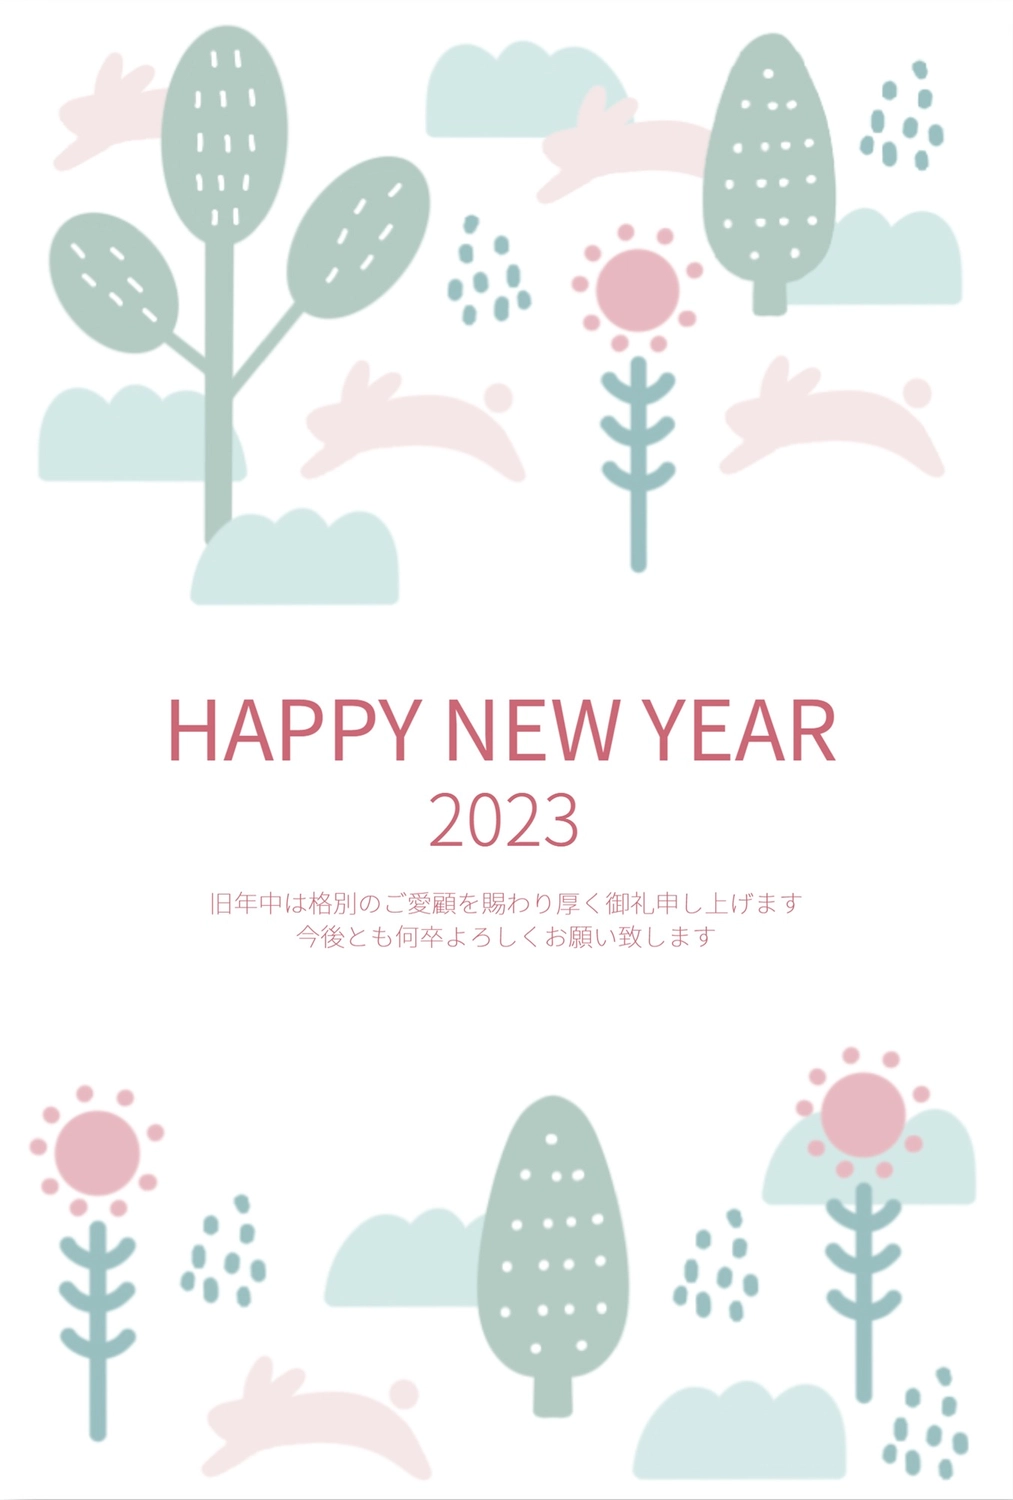 ジャンプするうさぎの年賀状, Mature, Scandinavian style, English text, New Year Card template